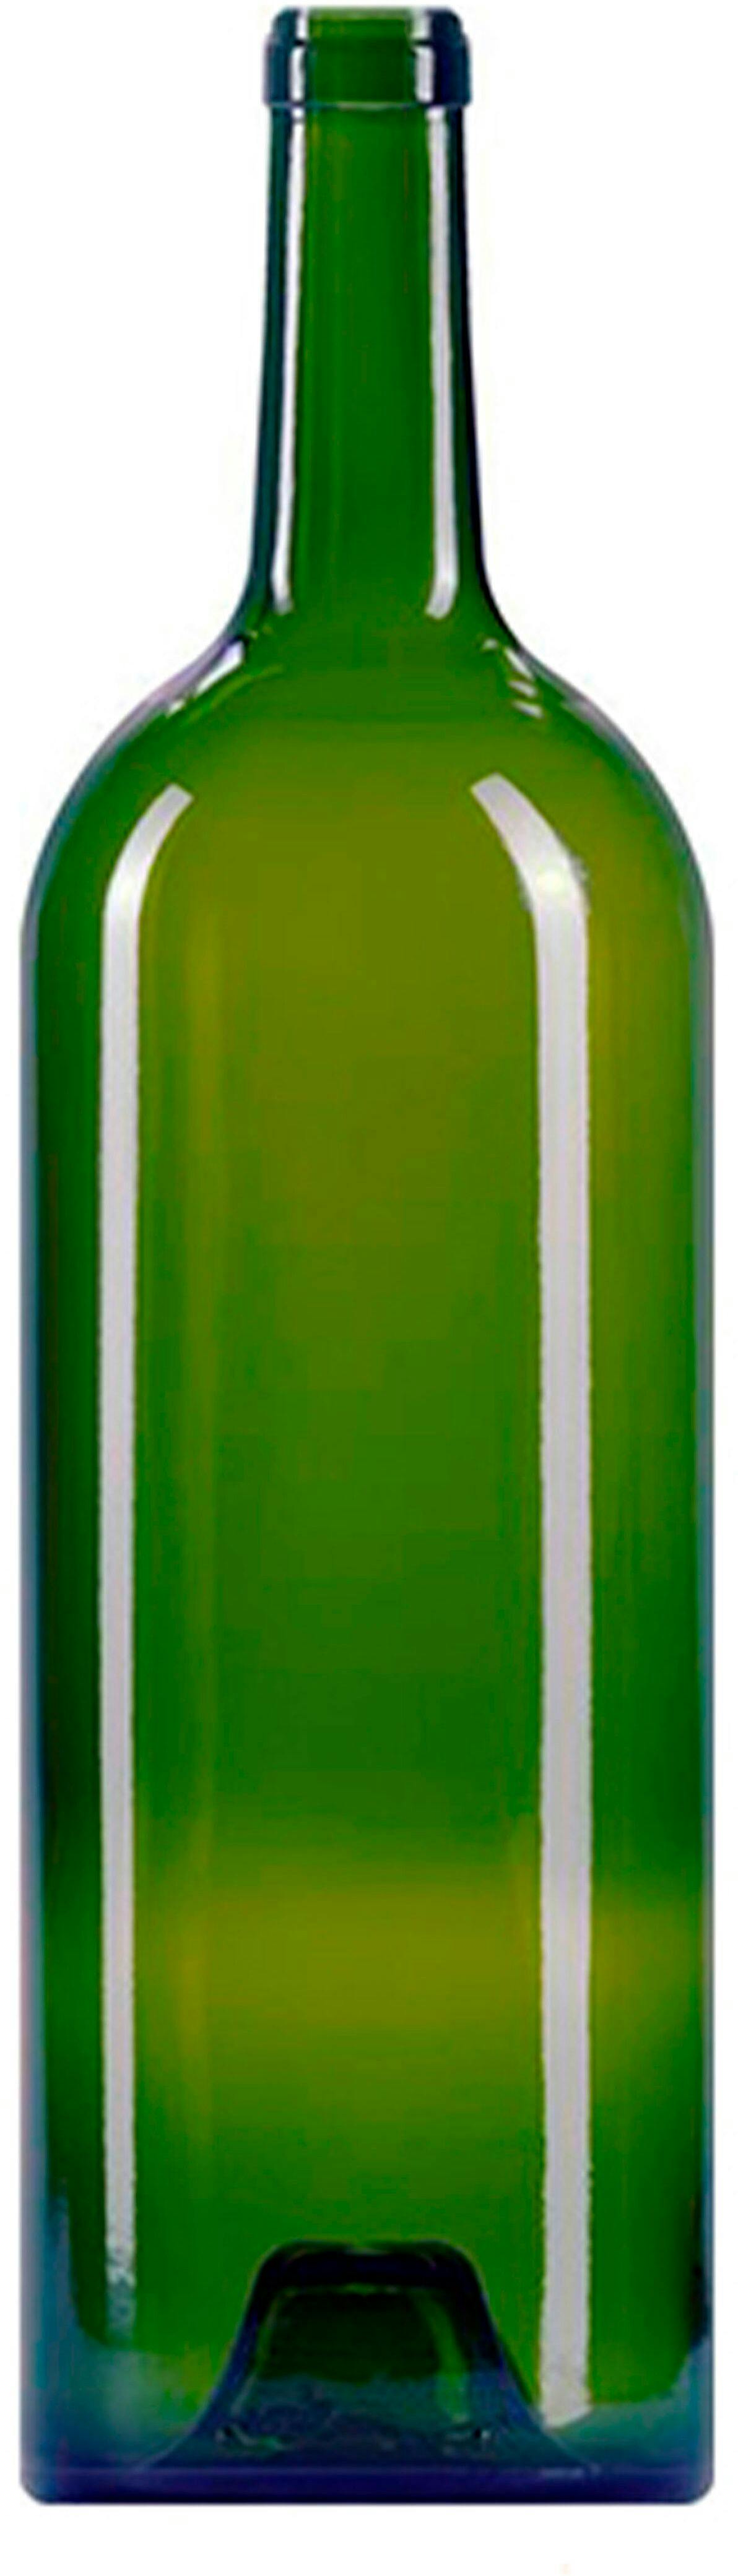 Bottle BORDOLESE  GRAND VIN 1500 ml BG-Cork